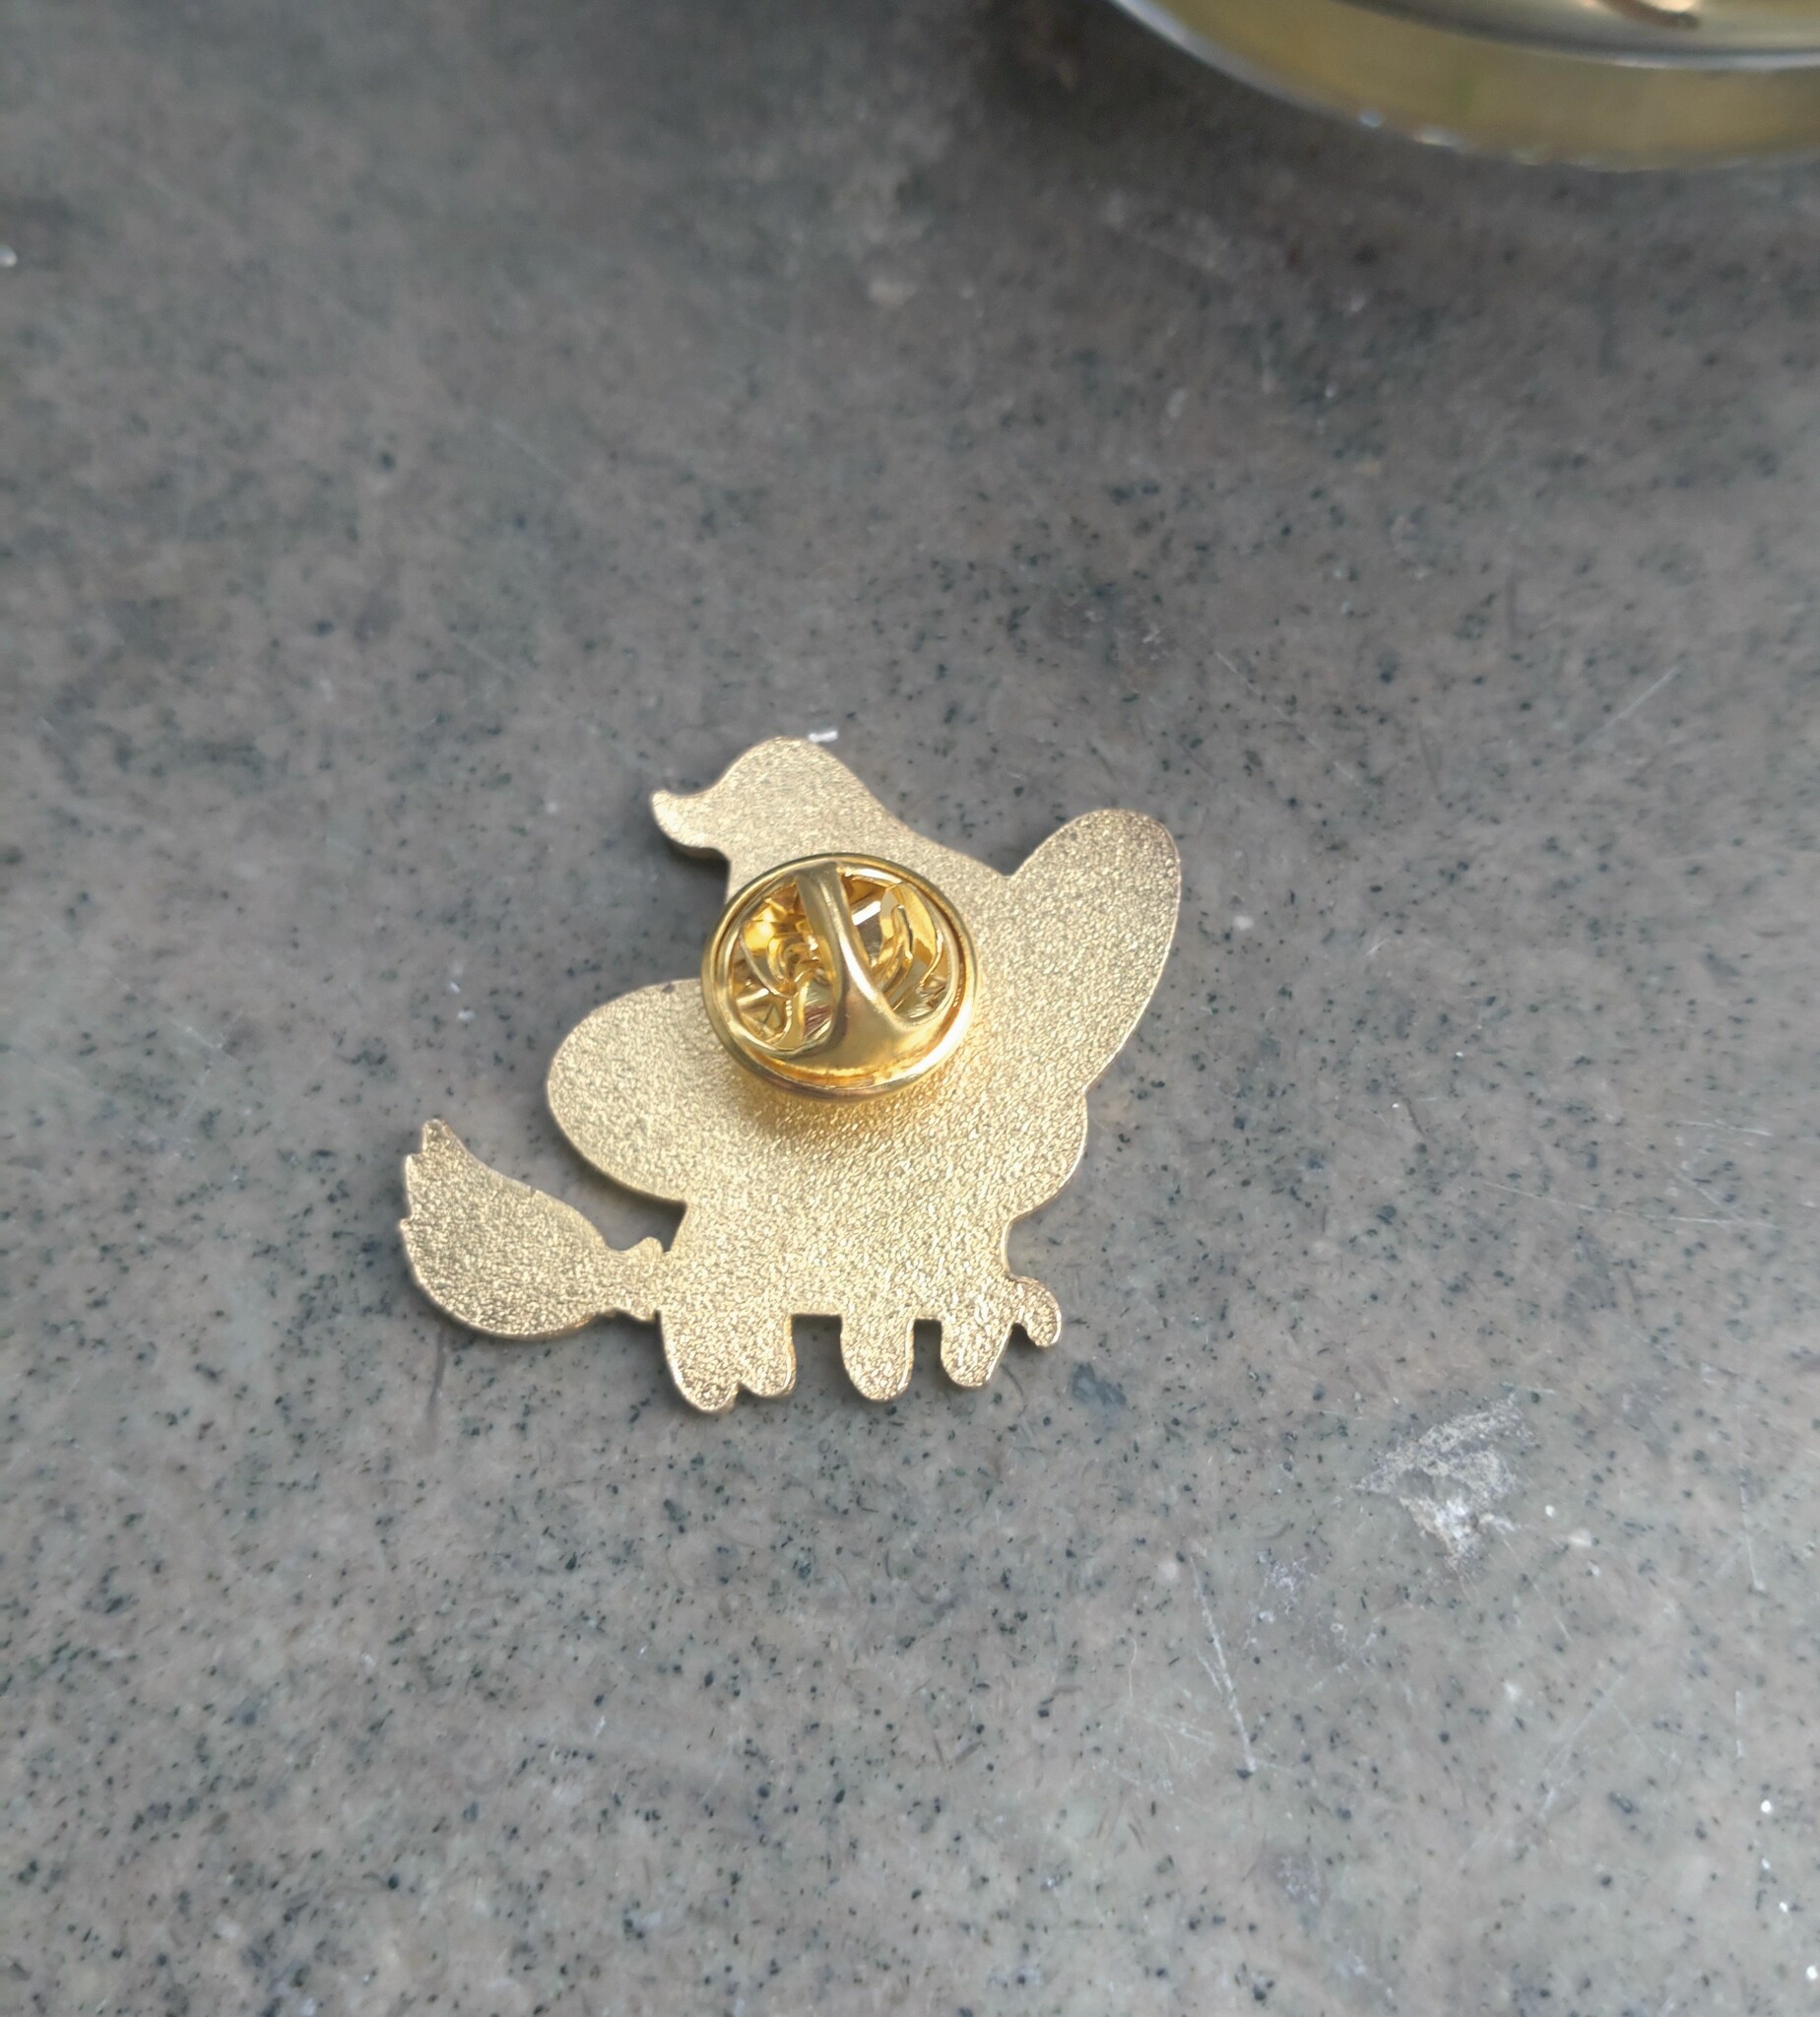 Pin Witch Kitty med guldfärgade detaljer